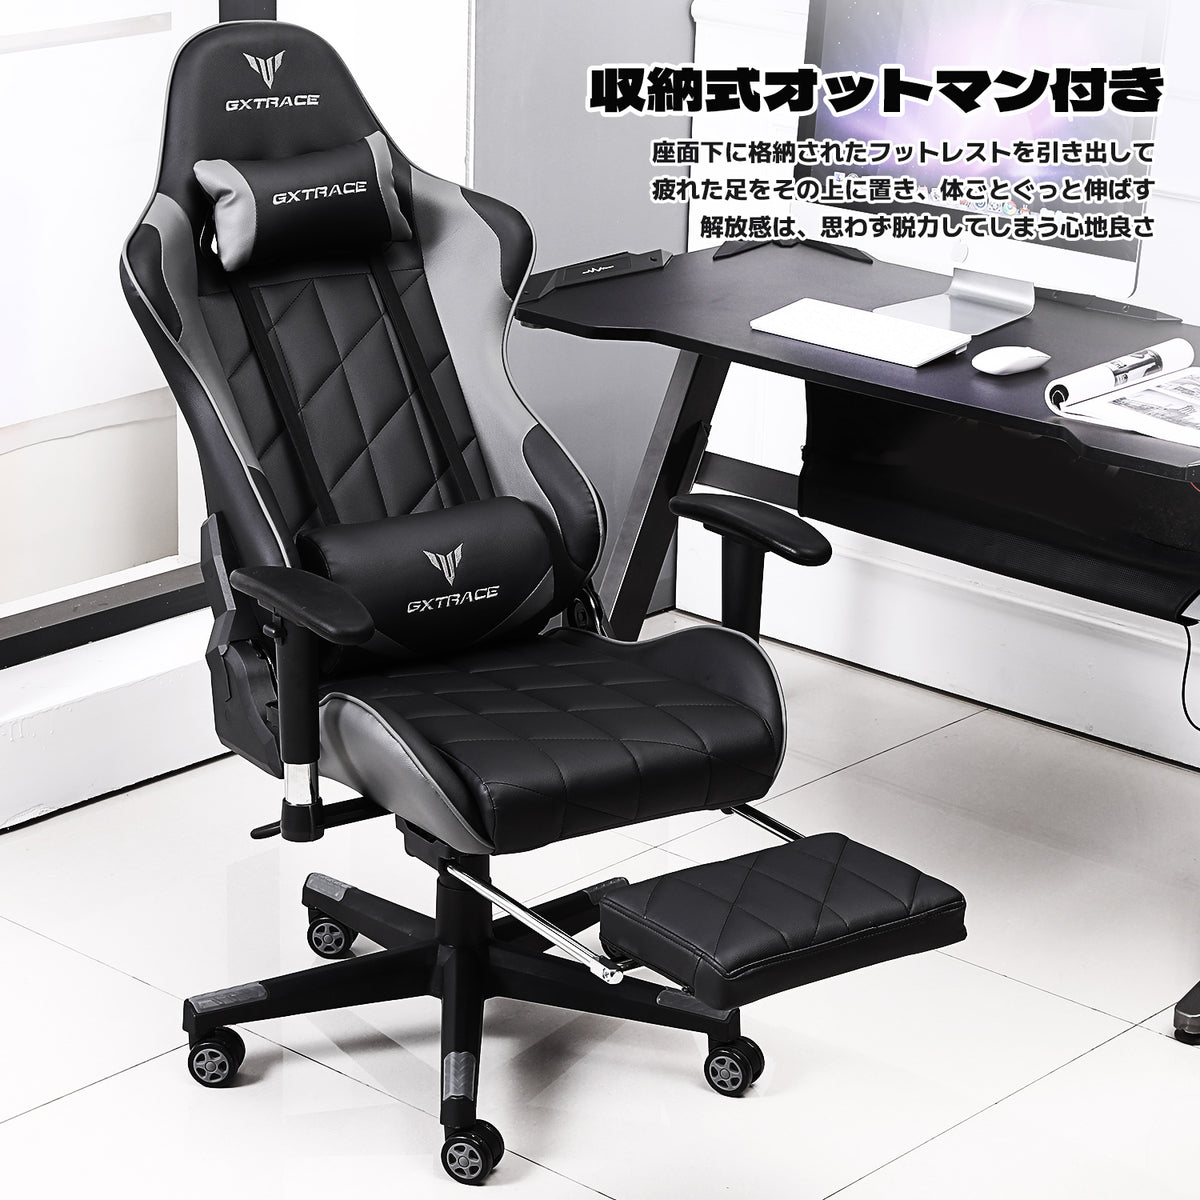 販売する GXTRACE ゲーミングチェア GXT101-GRAY - 椅子・チェア